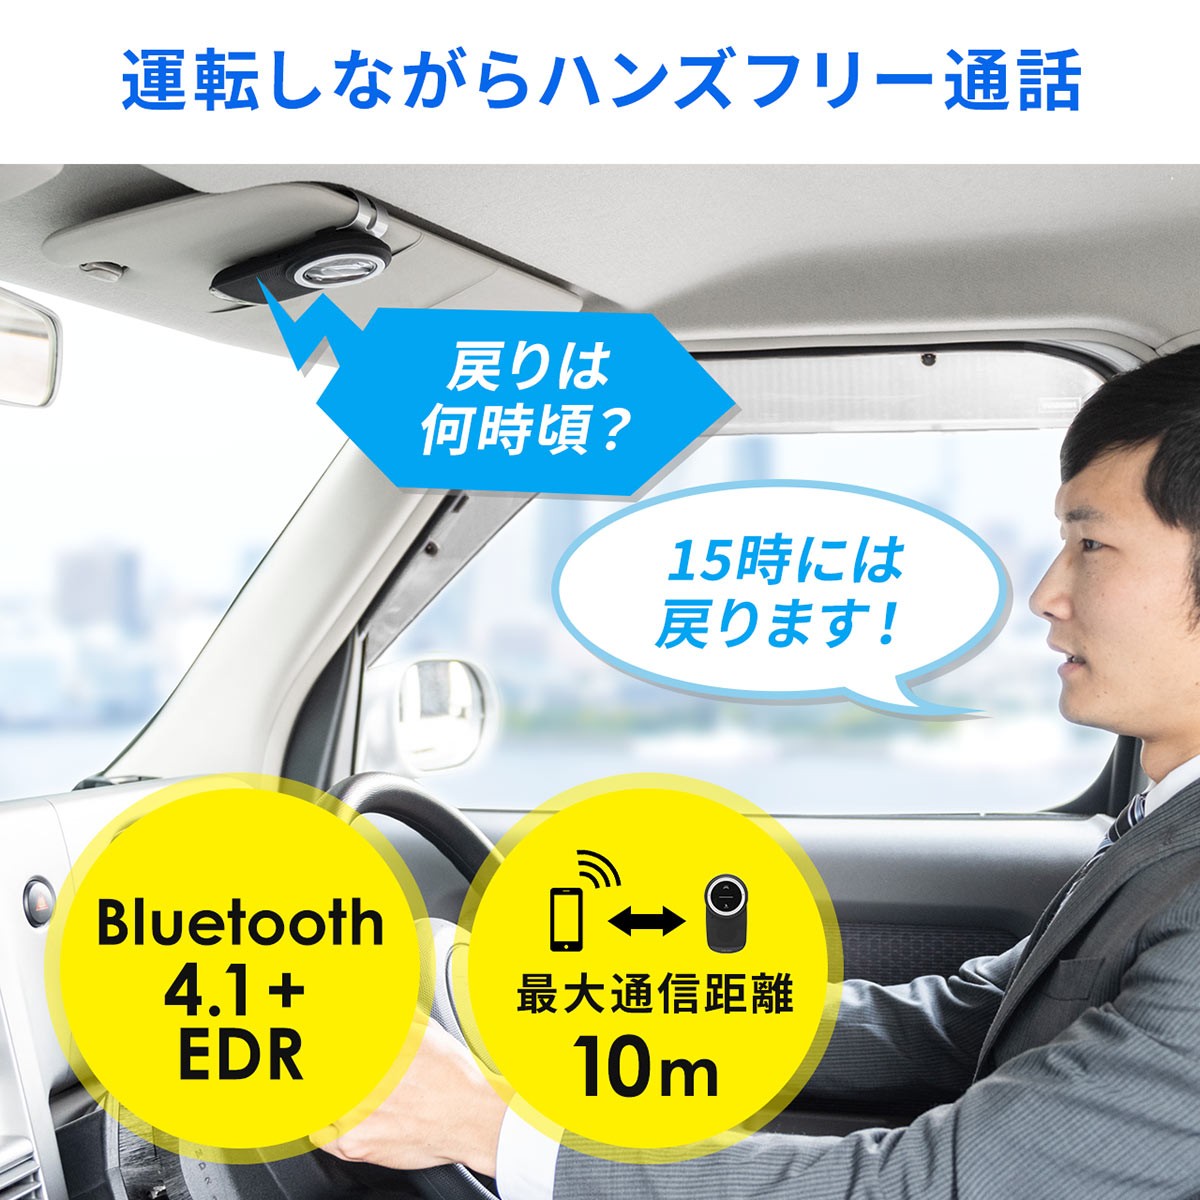 ハンズフリー 車 Bluetooth 車載 通話 電話 Iphone スマホ 長時間 高音質 ノイズキャンセル 運転中通話 ながら運転対策 サンワダイレクト 通販 Paypayモール